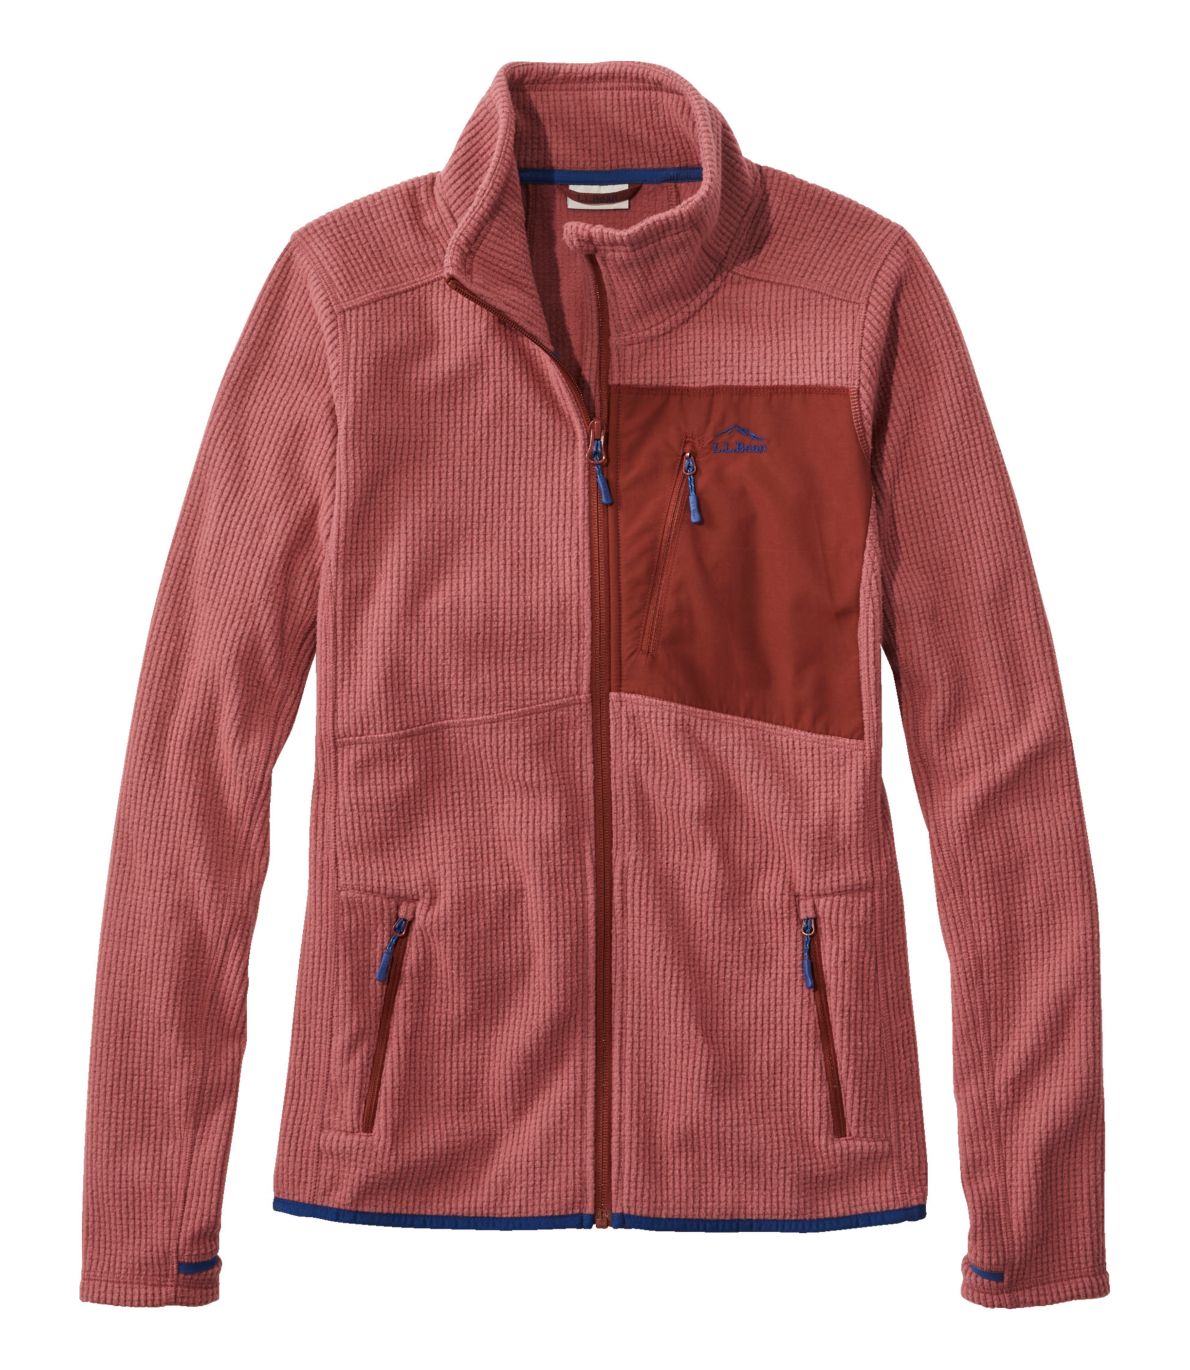 Women's Pathfinder Performance Fleece Jacket, Full-Zip